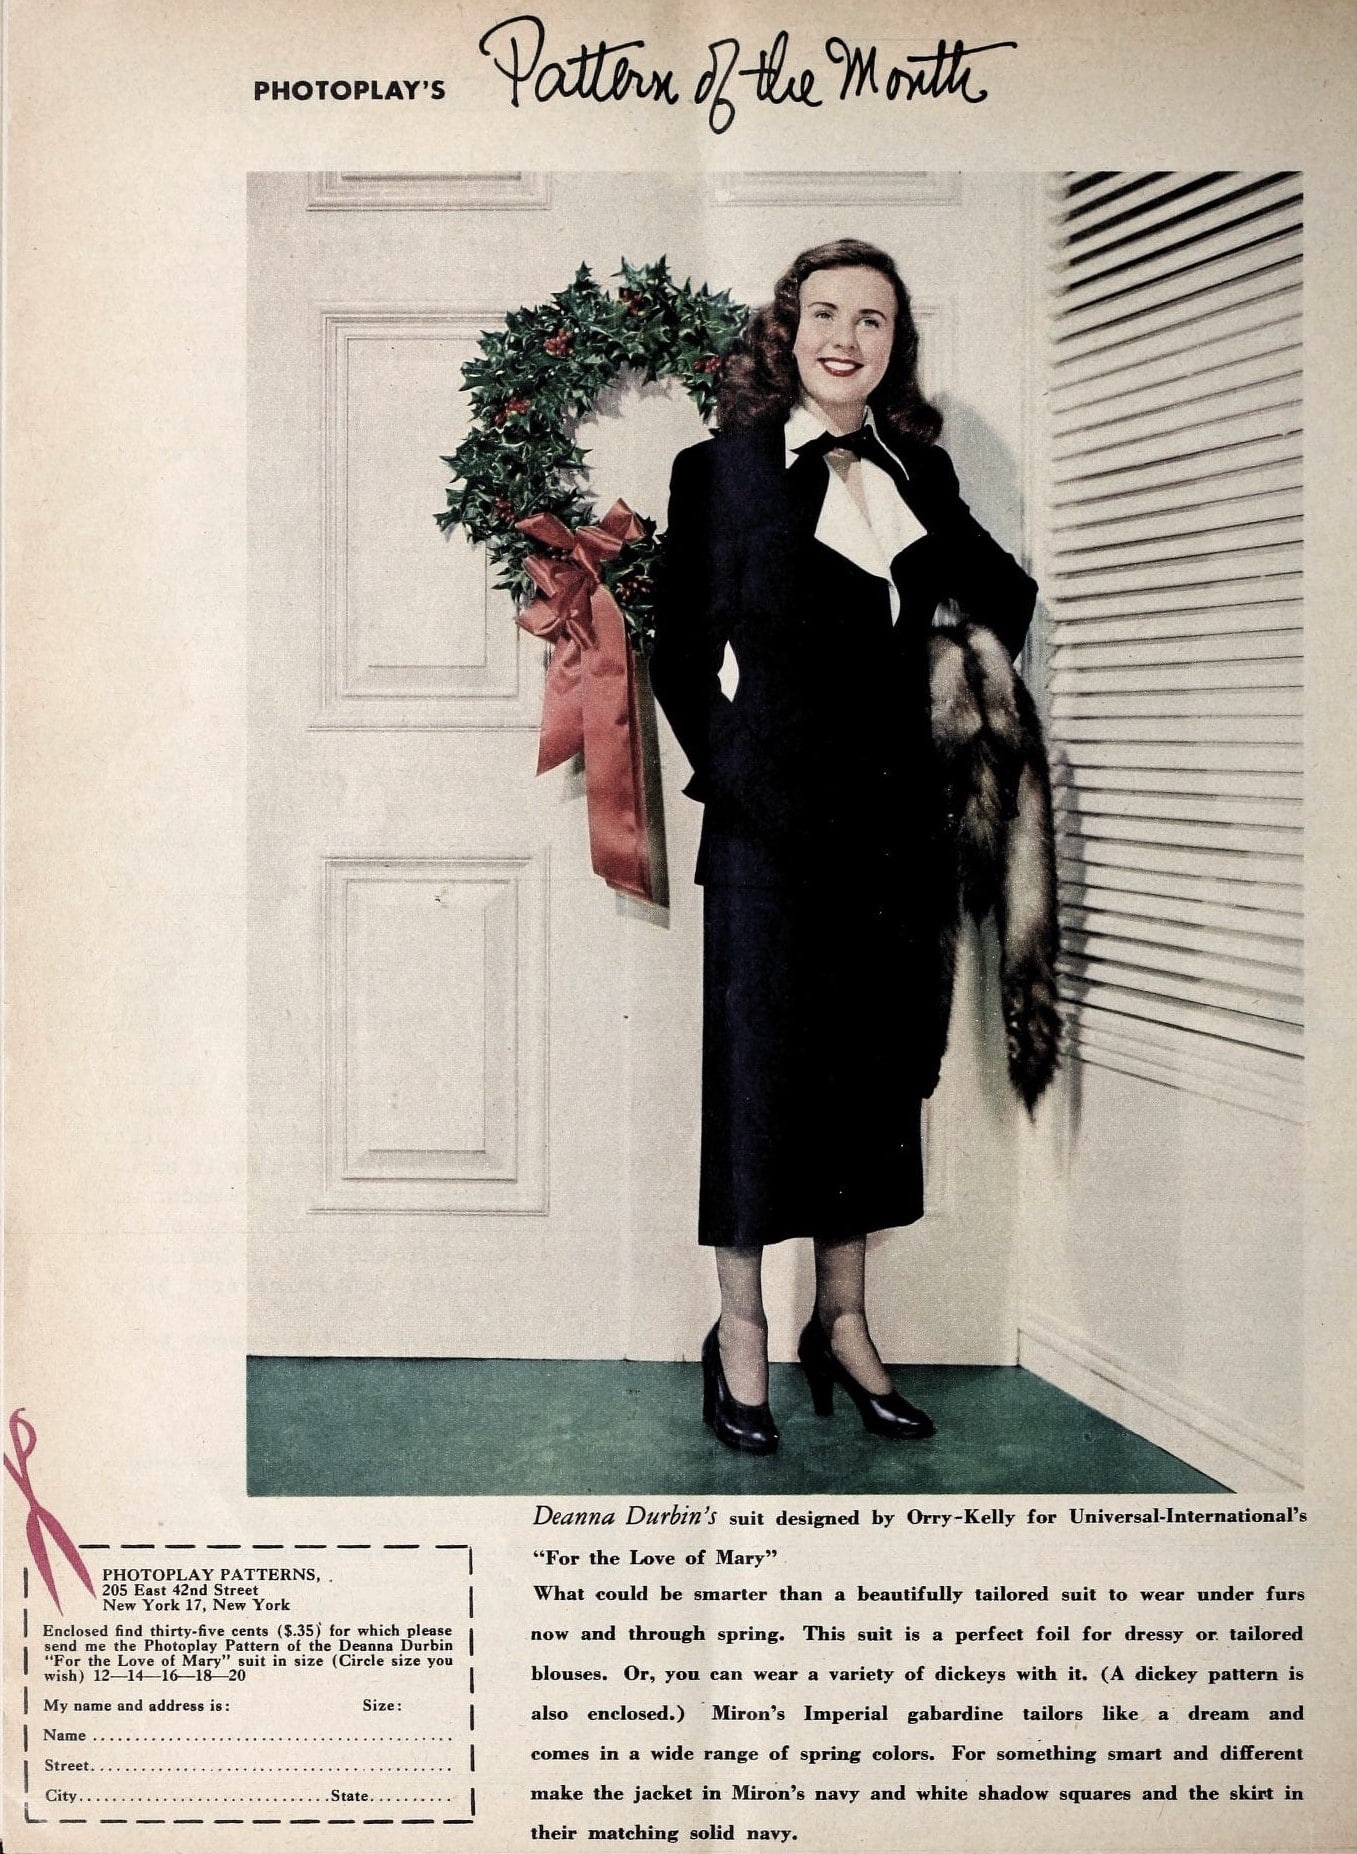 deanna durbin suit wreath 